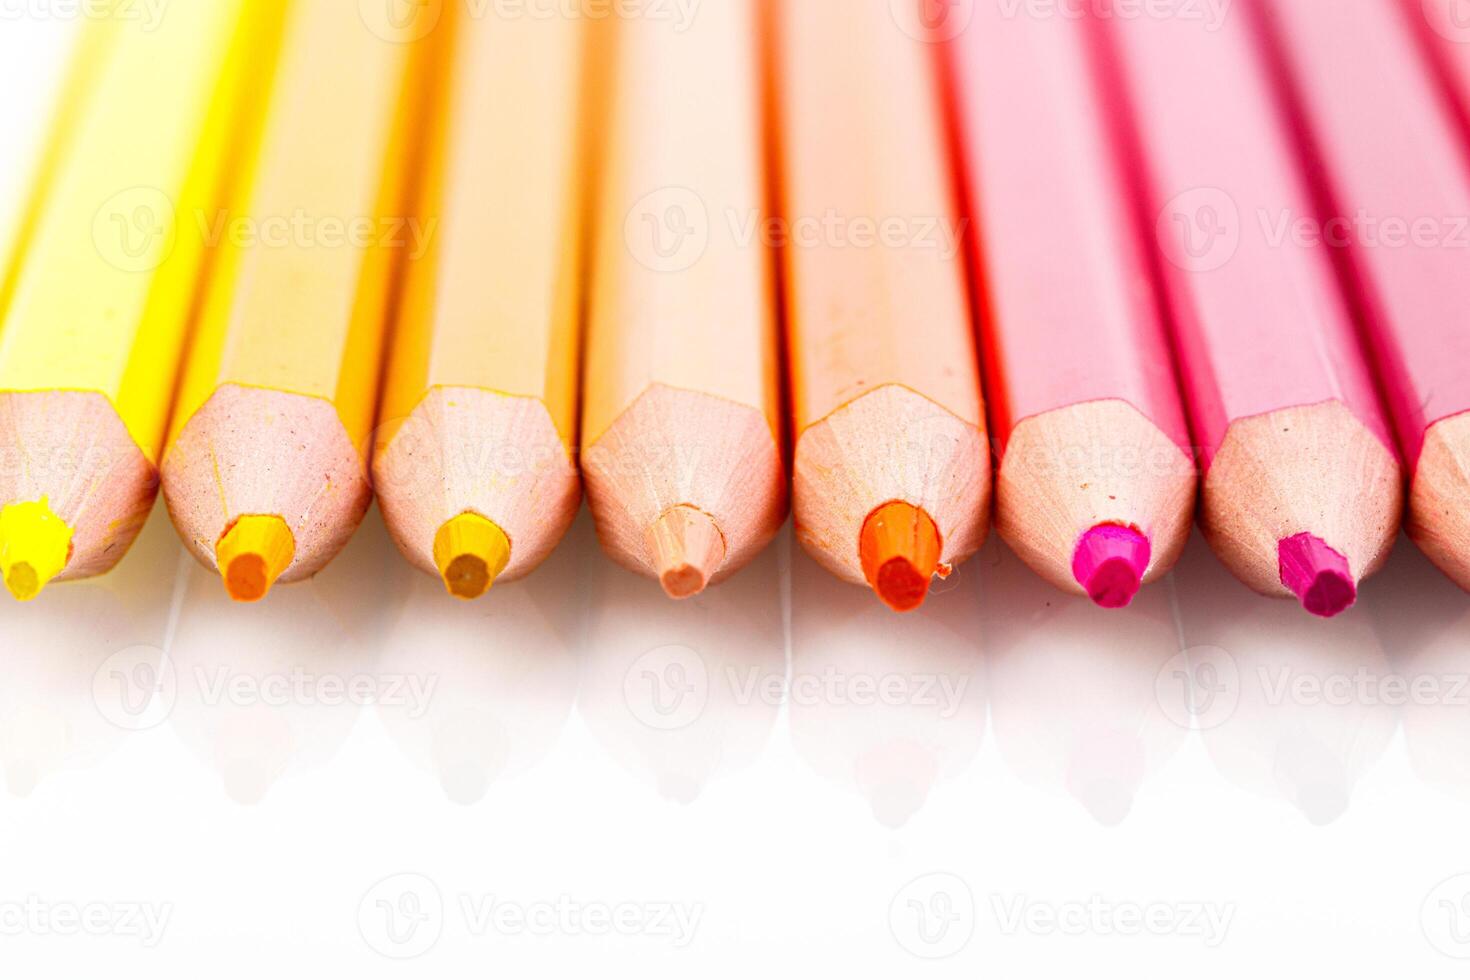 macro multicolorido lápis em uma branco fundo foto